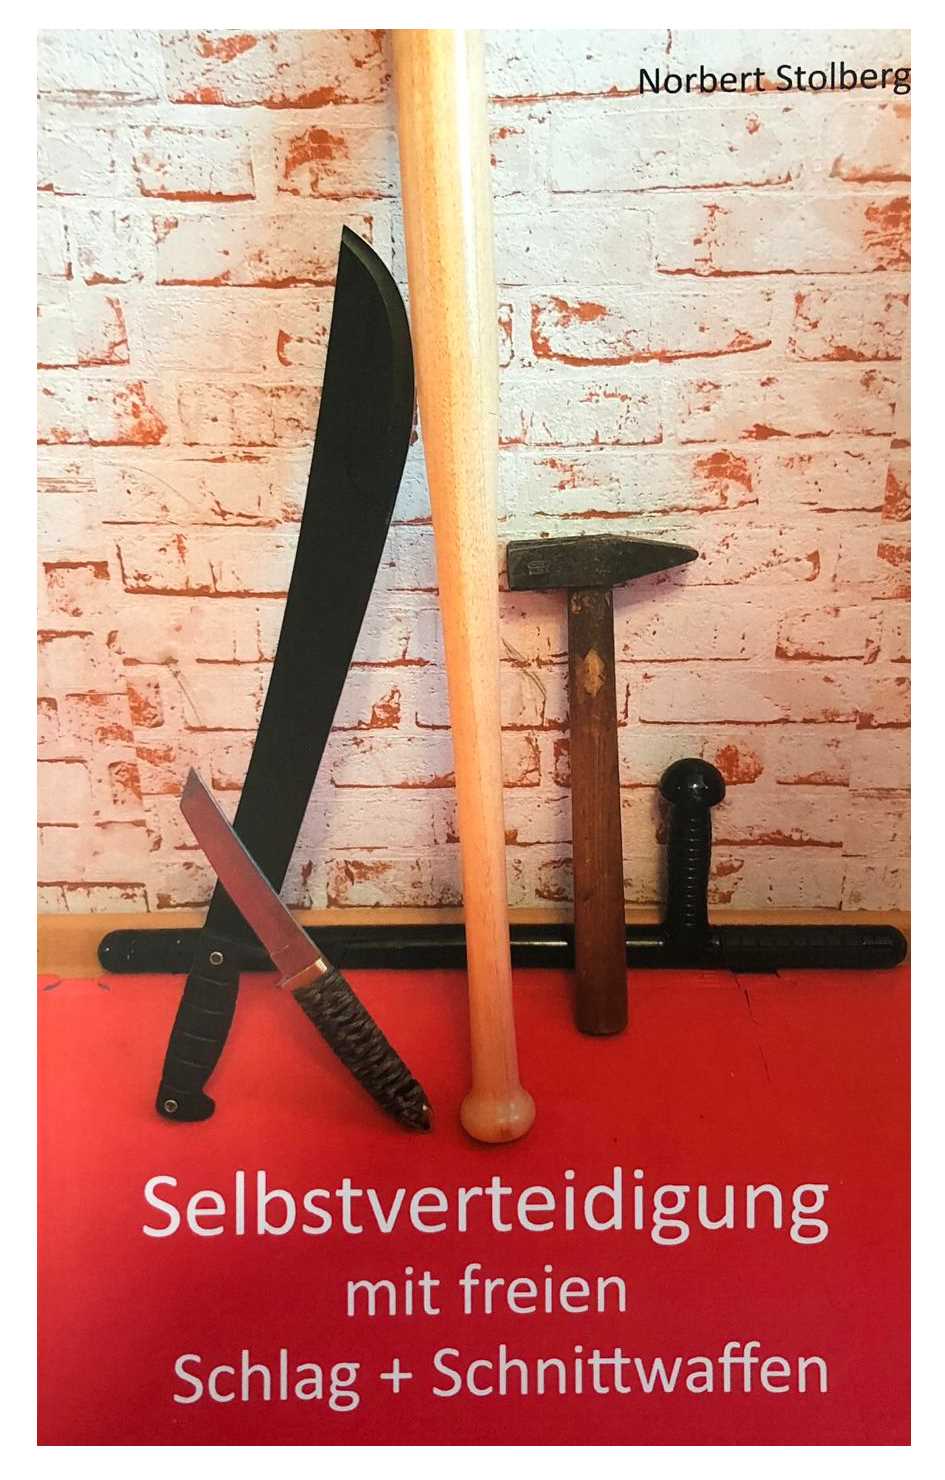 Selbstverteidigung mit freien Schlag- und Schnittwaffen: Stock Schirm Messer Beil Machete Dan Bong (Stolberg, Norbert)